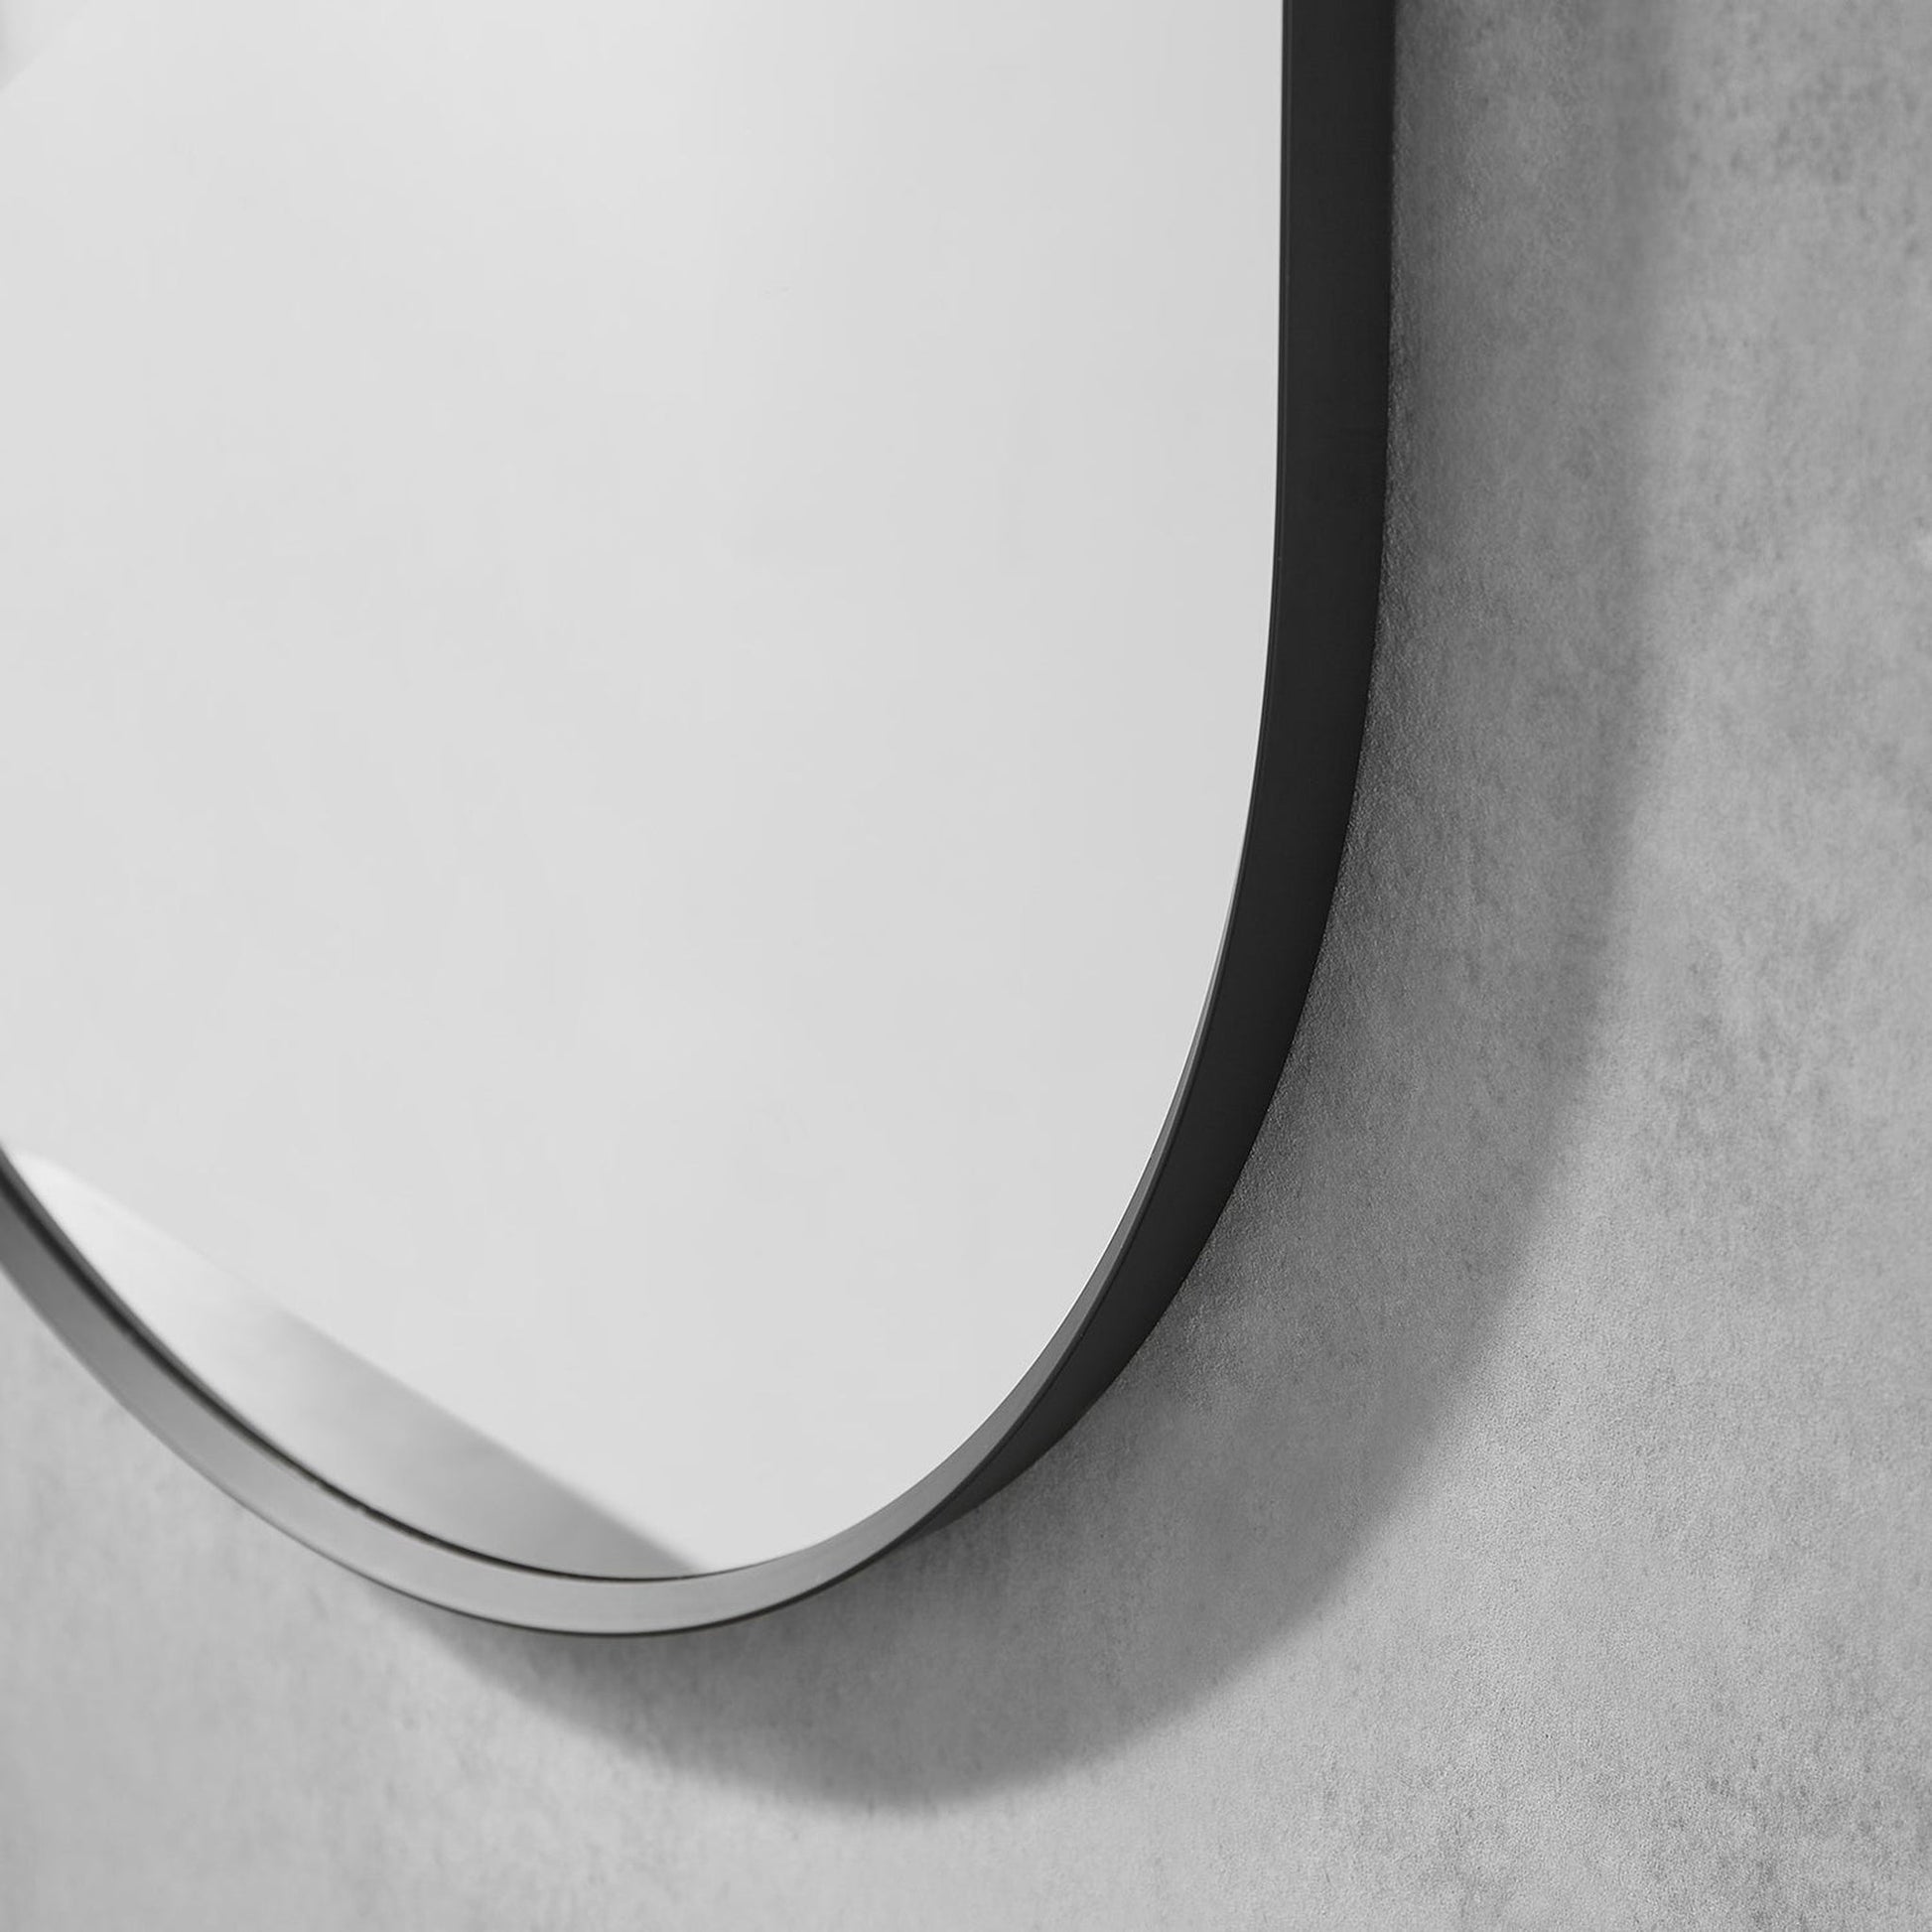 Altair Ispra 22" Oval Matt Black Aluminum Framed Wall-Mounted Mirror